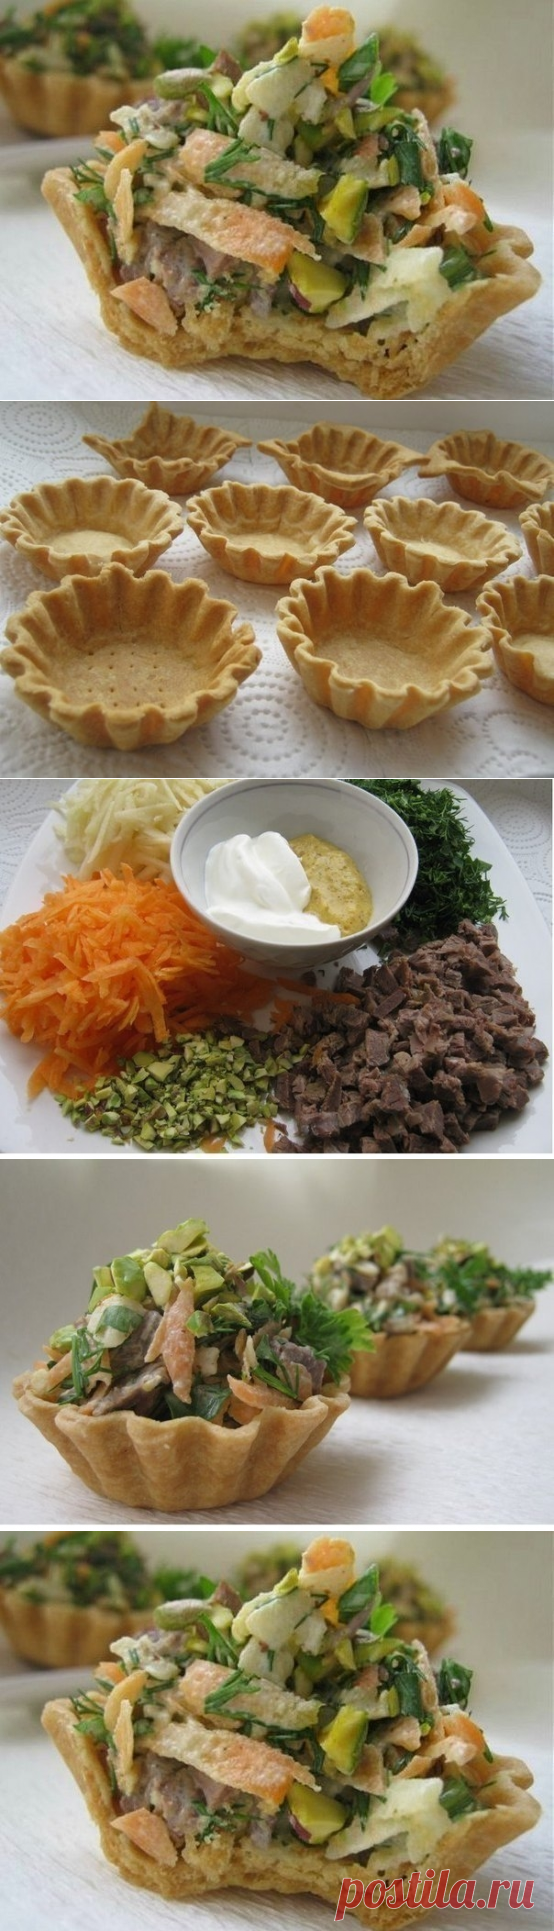 Как приготовить корзиночки с мясным салатом - рецепт, ингридиенты и фотографии